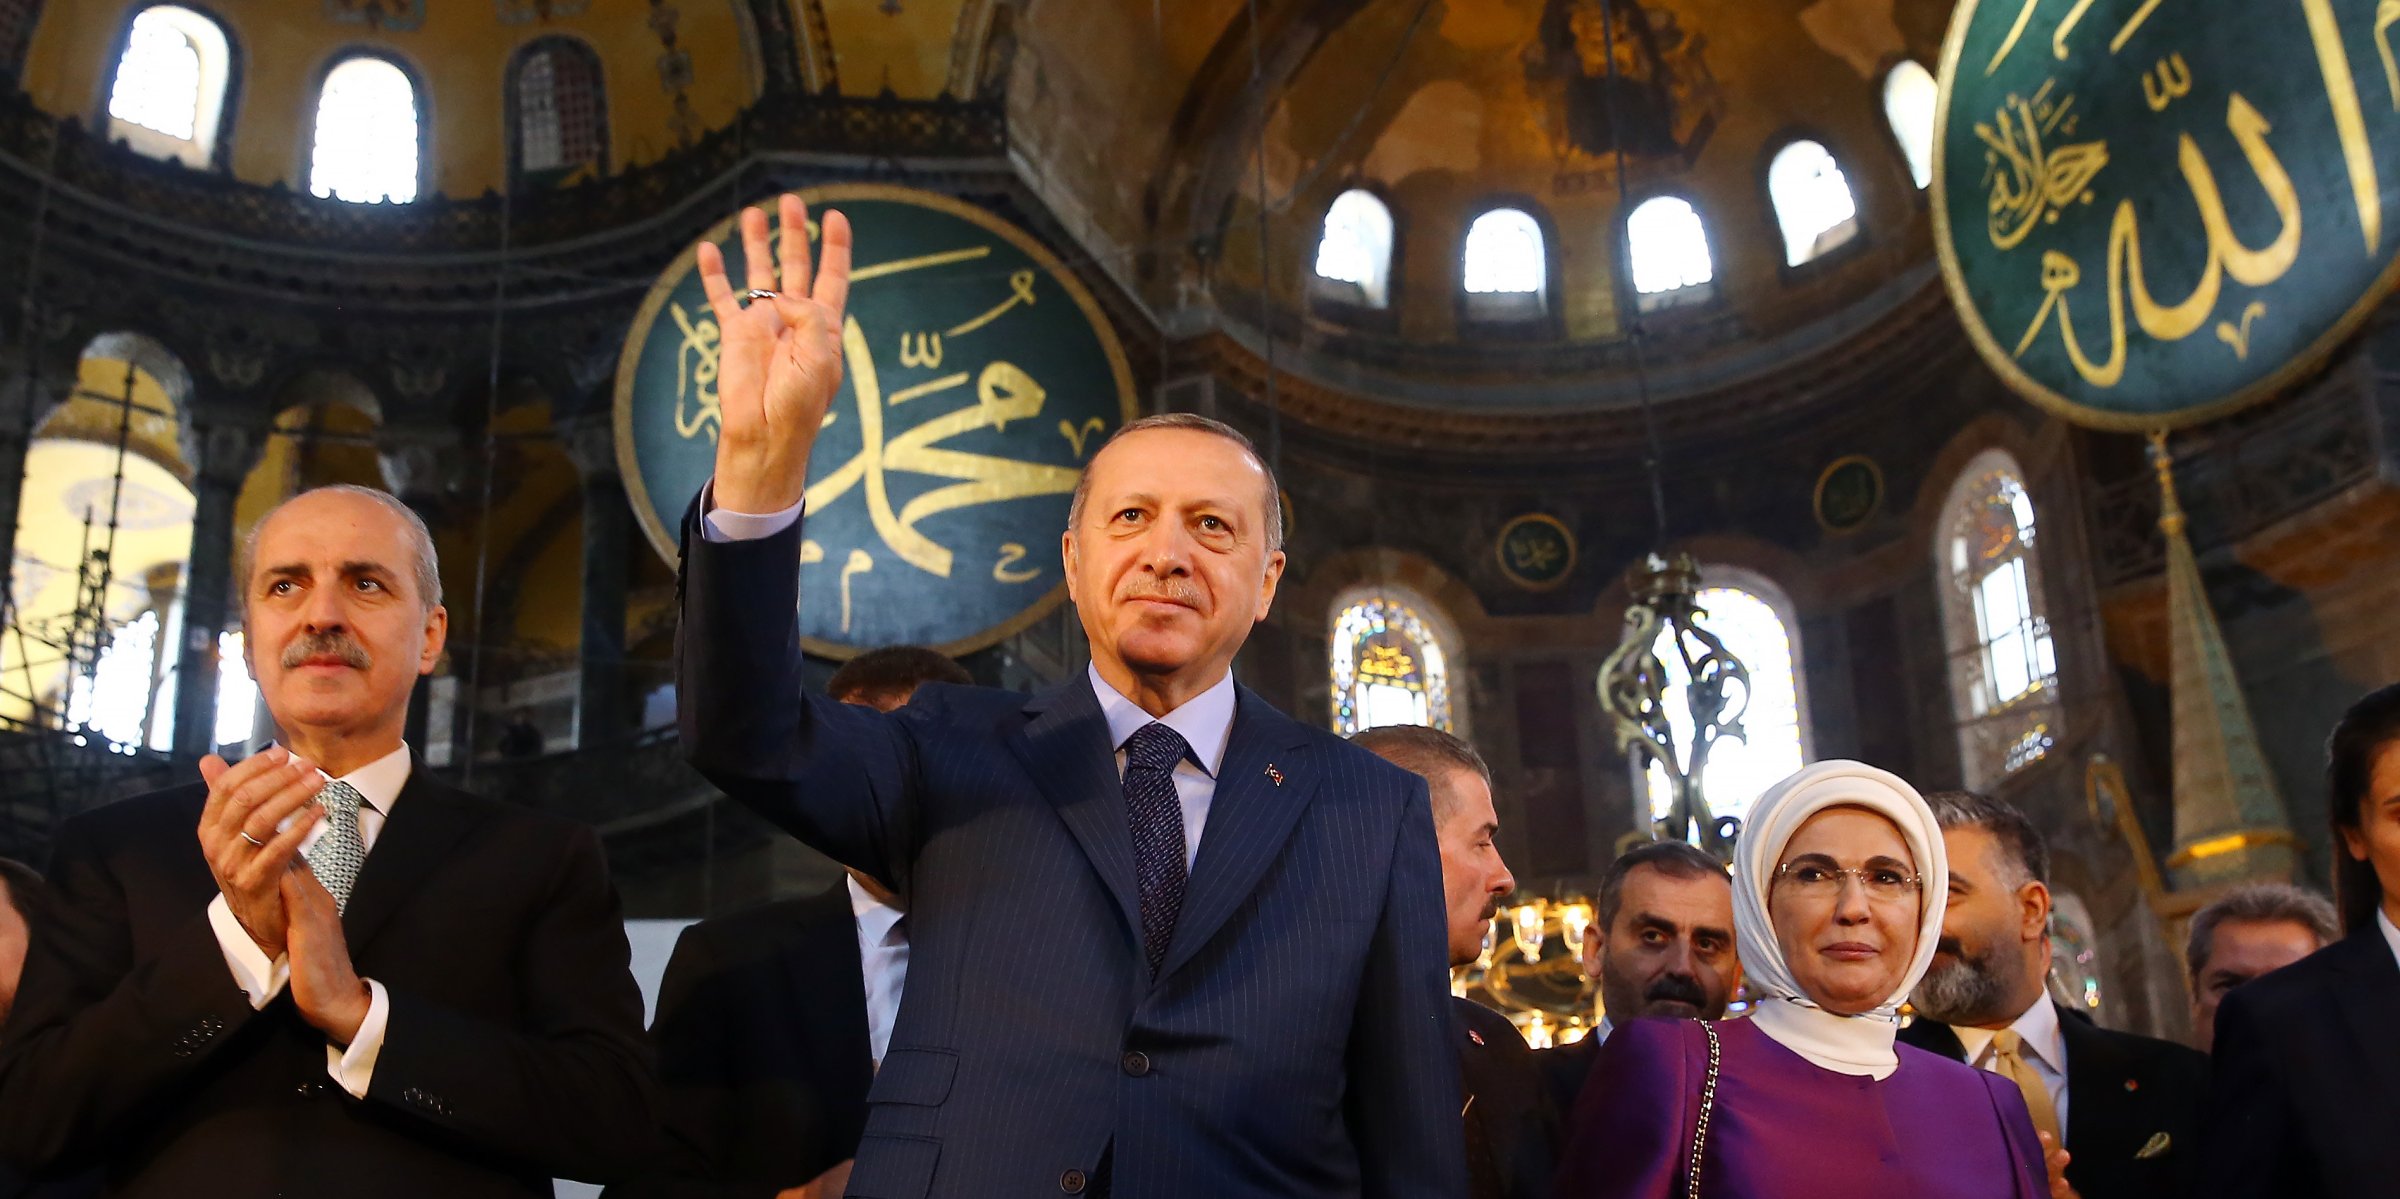 FT για απόφαση Ρ.Τ.Ερντογάν: Γιατί επέλεξε να μετατρέψει τώρα την Αγία Σοφιά σε τζαμί;